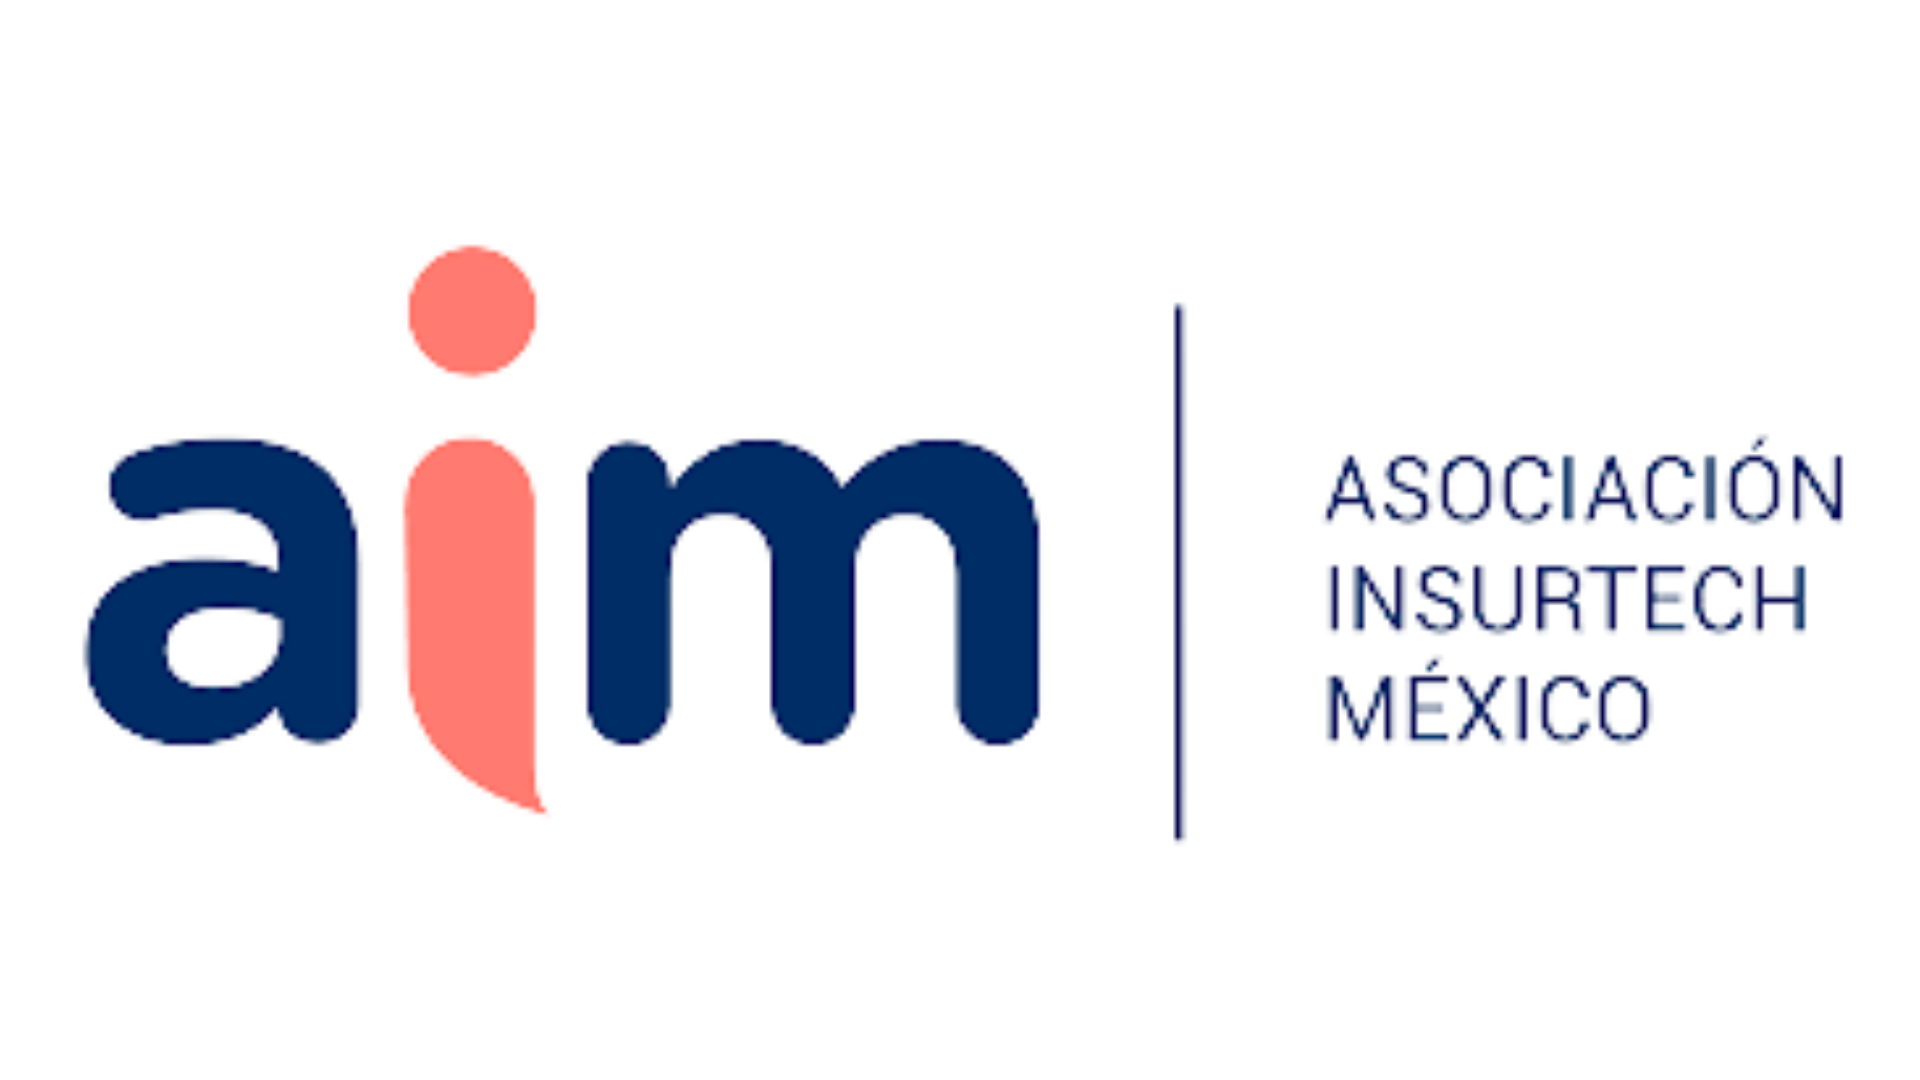 InsurTech Mexico Association